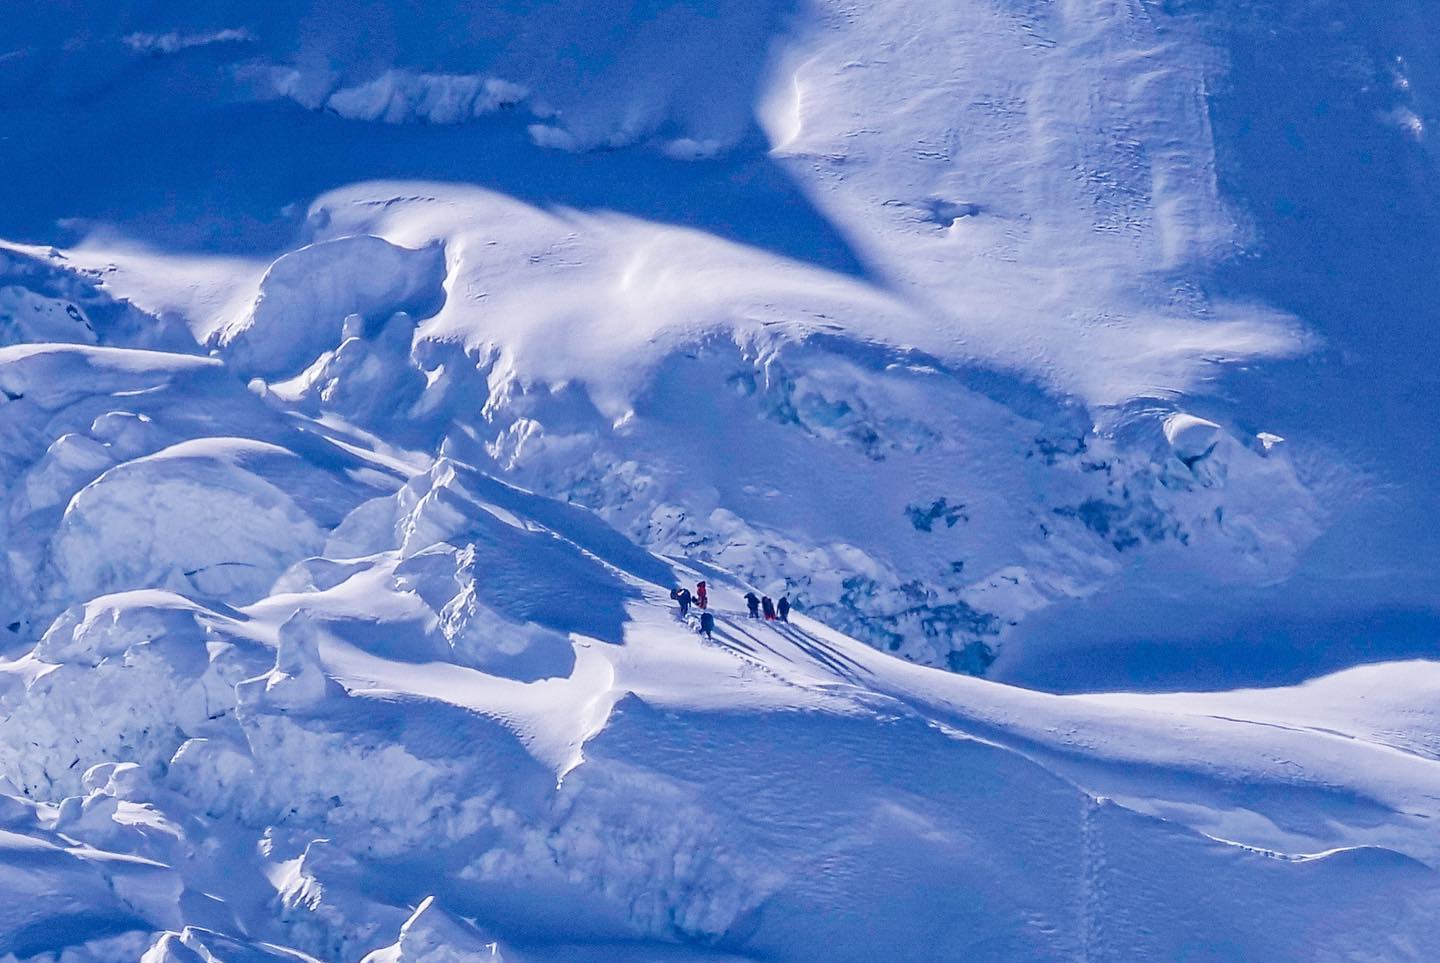 крохотная нить "муравьёв-альпинистов", пытающаяся взобраться на огромную стену заснеженной горы. Фото Alex Txikon